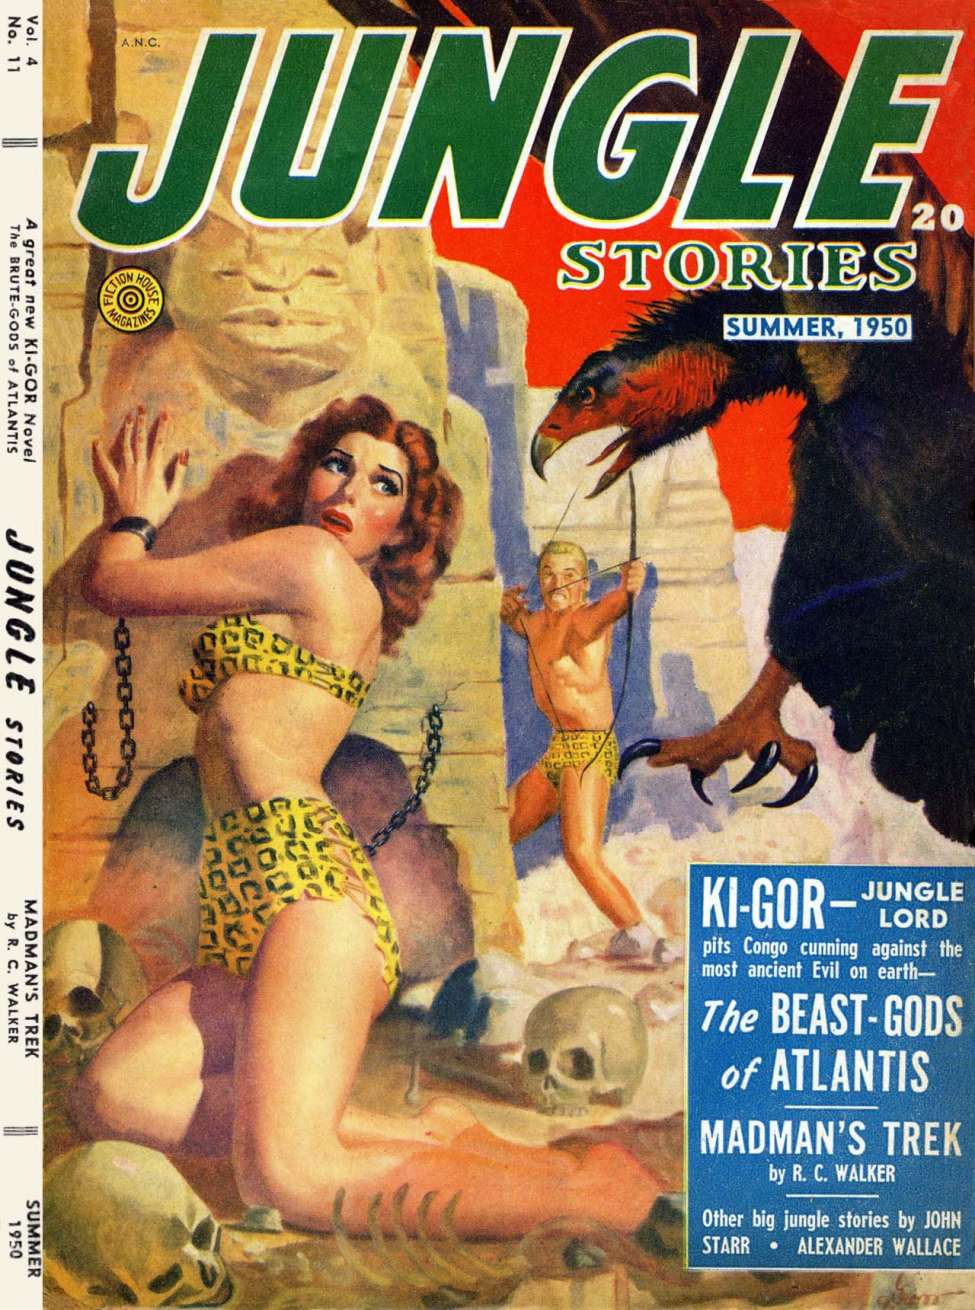 Book Cover For Jungle Stories v4 11 - The Beast-Gods of Atlantis - John Peter Drummond